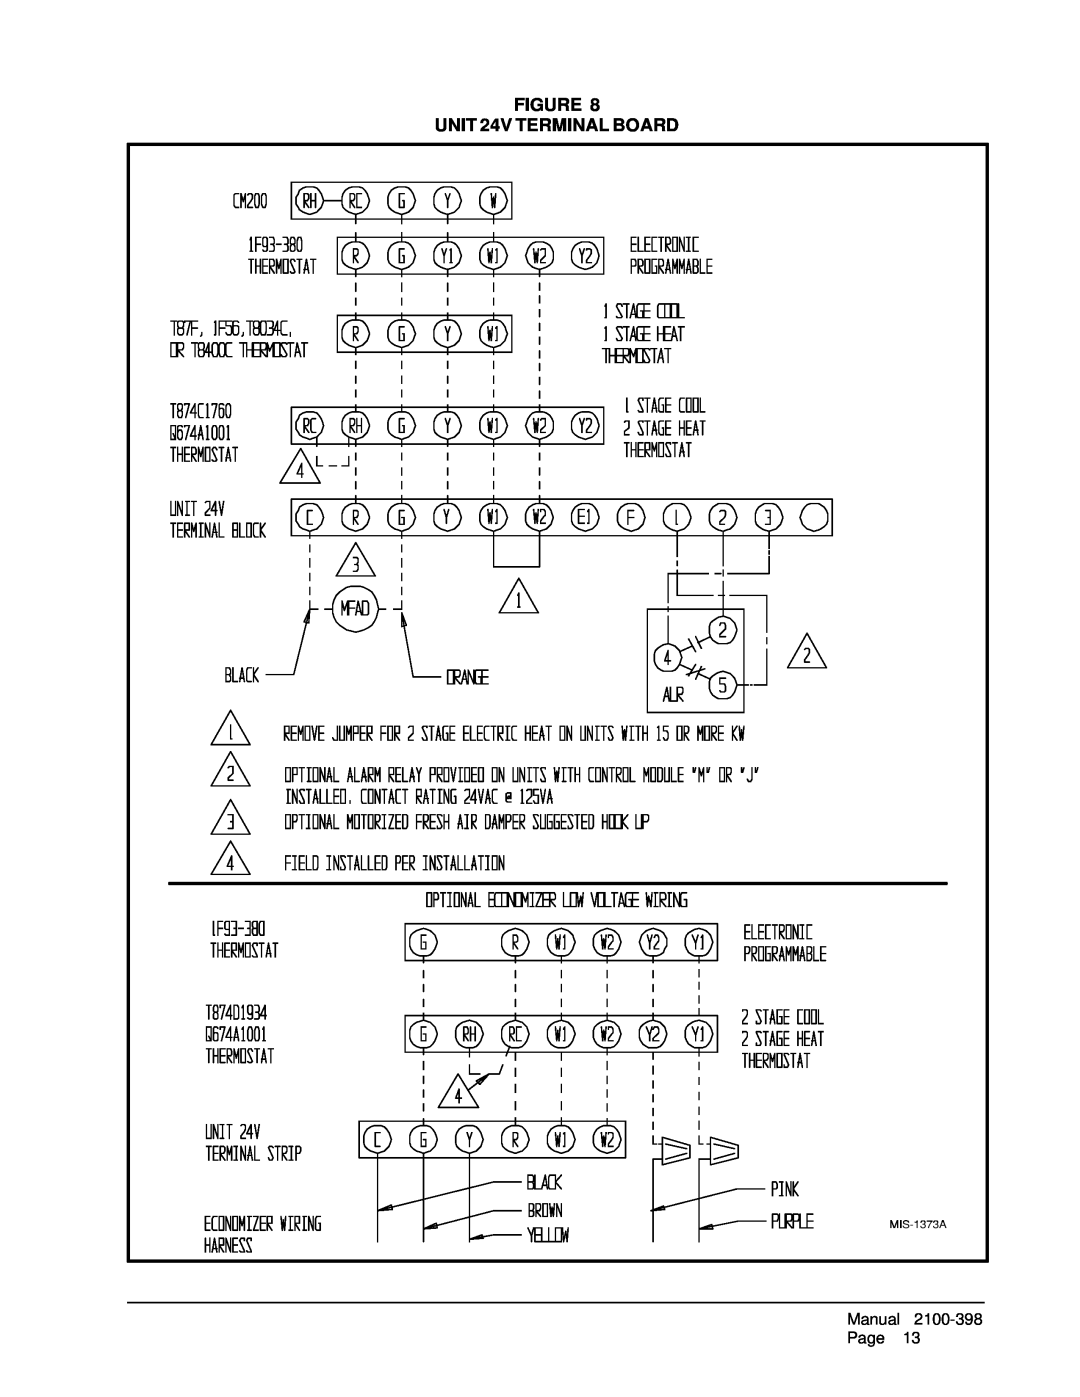 Bard WA602, WA491, WA484, WA381, WA423 installation instructions FIGURE UNIT 24V TERMINAL BOARD, Manual, 2100-398, Page 